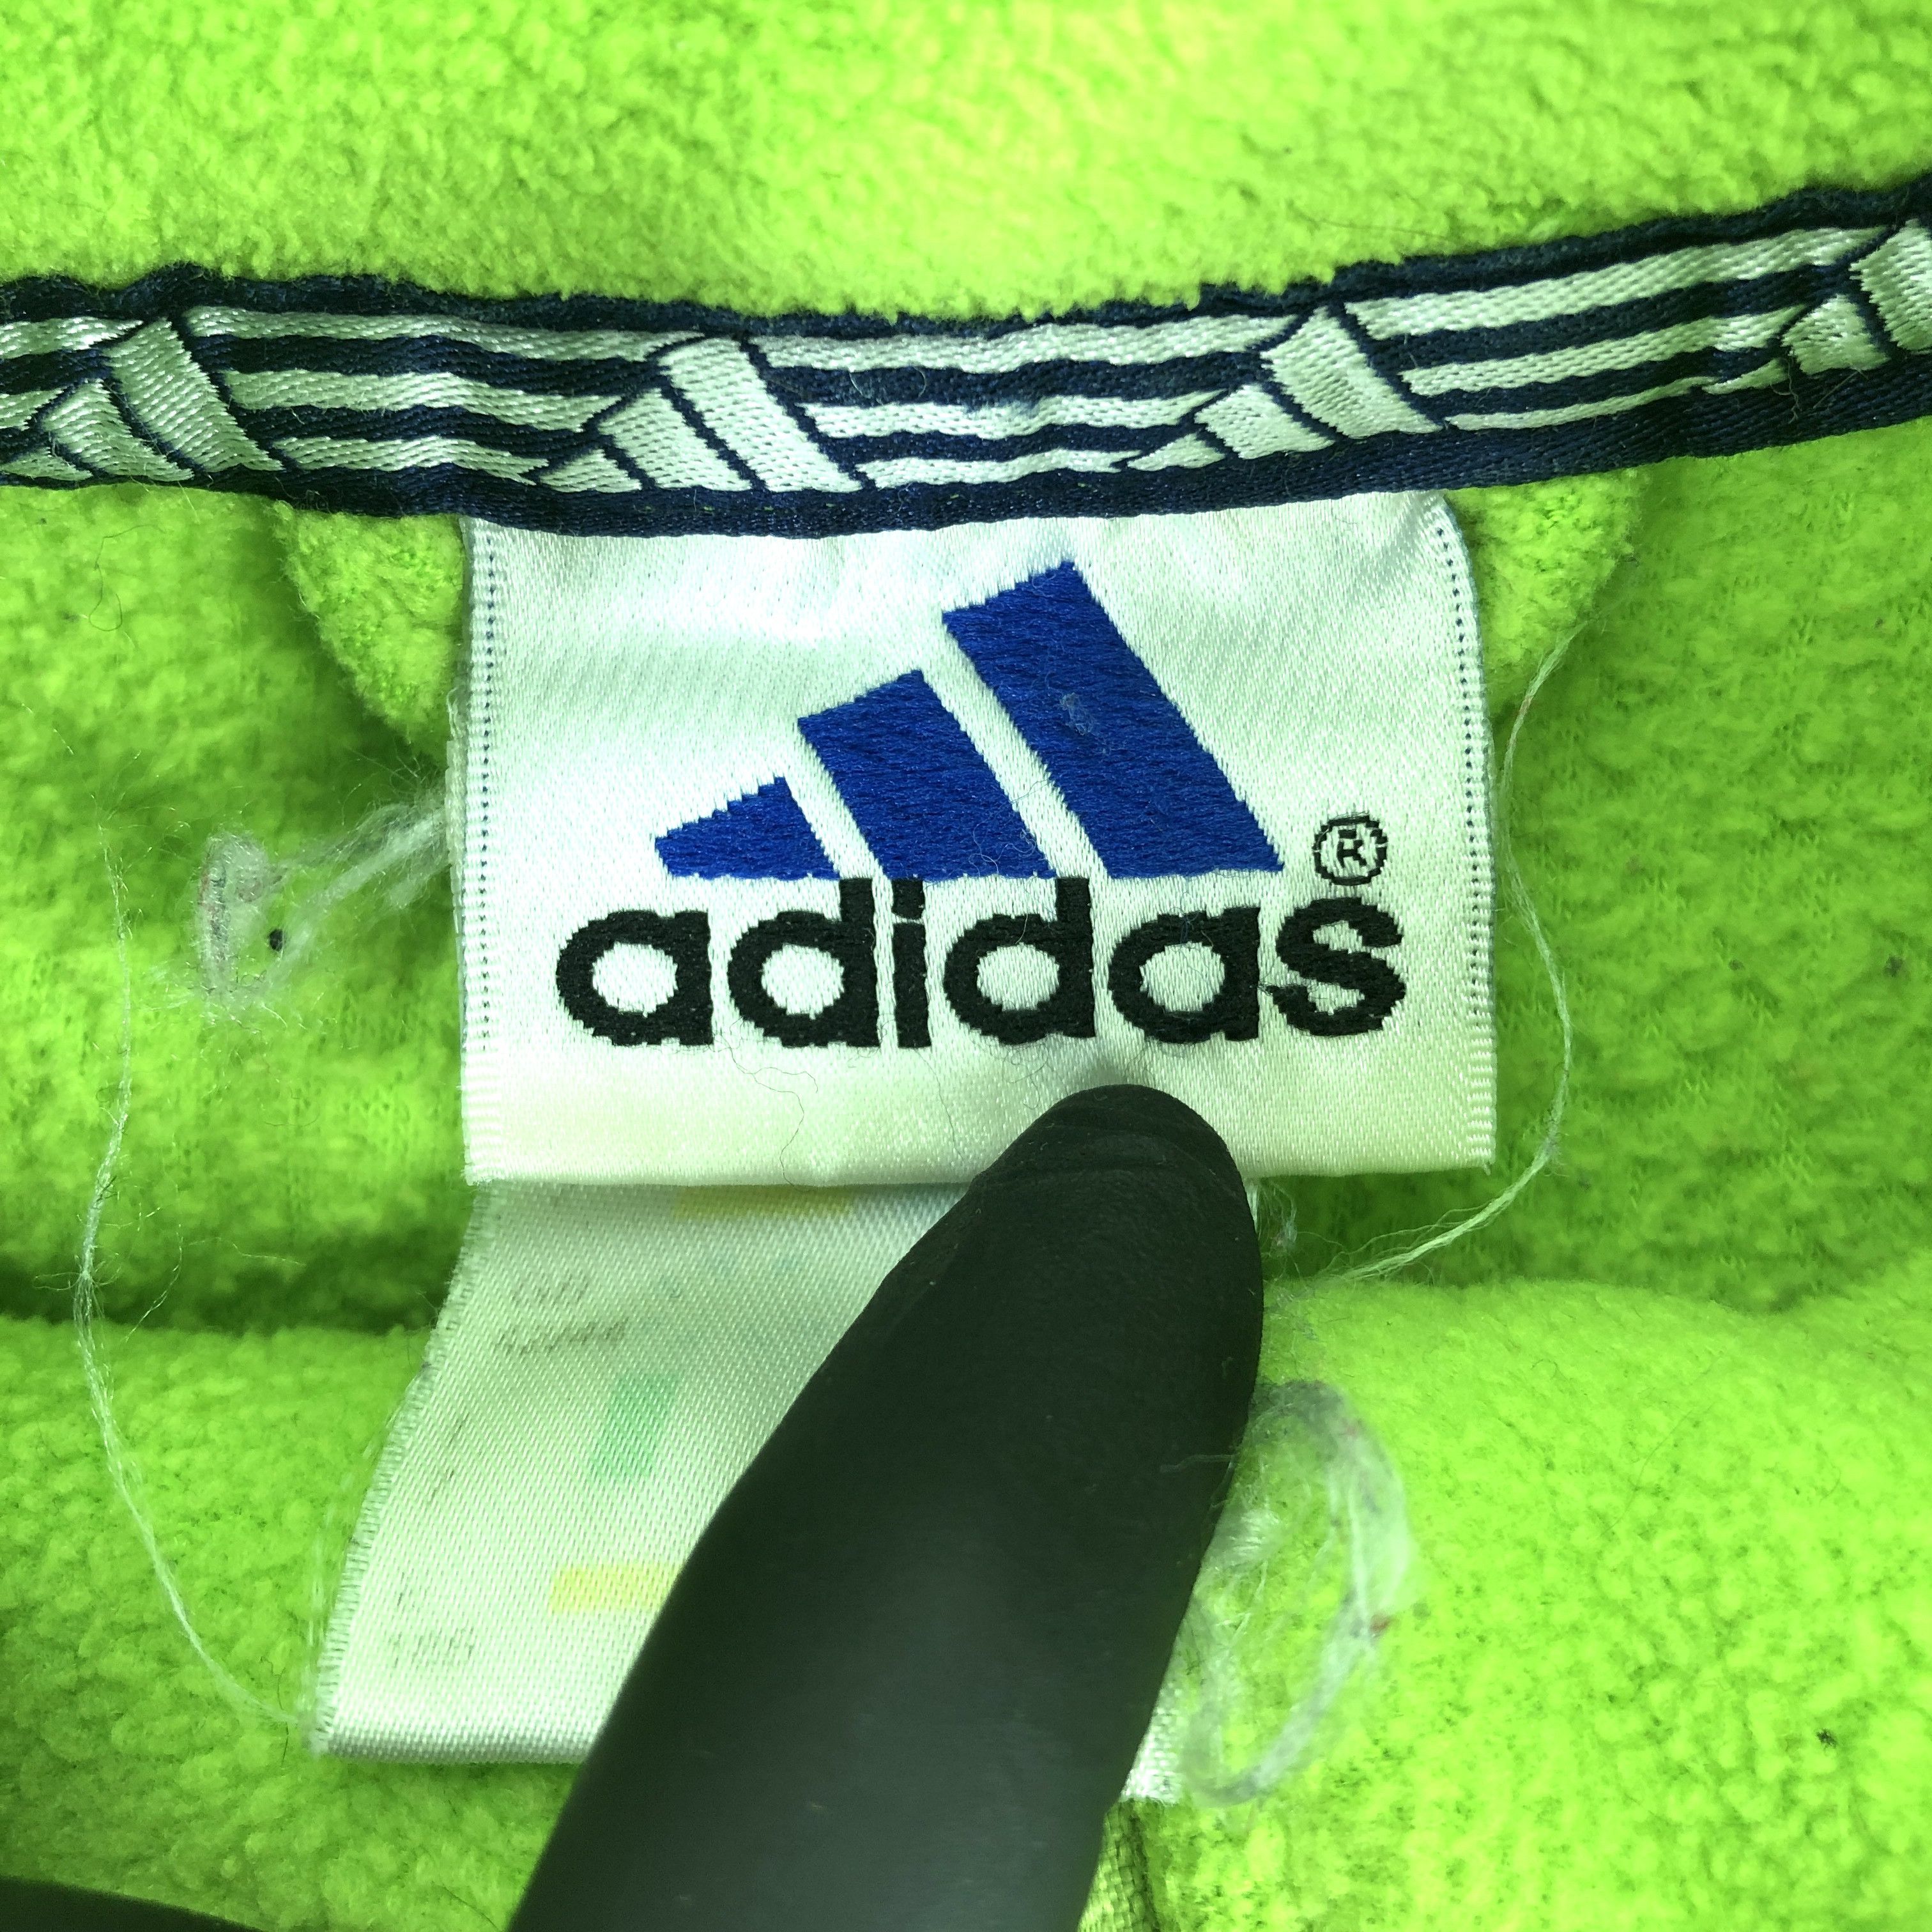 Adidas VTG Adidas Mint-Green Fleece Oversized Jumper Jacket Coat Size US L / EU 52-54 / 3 - 5 Thumbnail